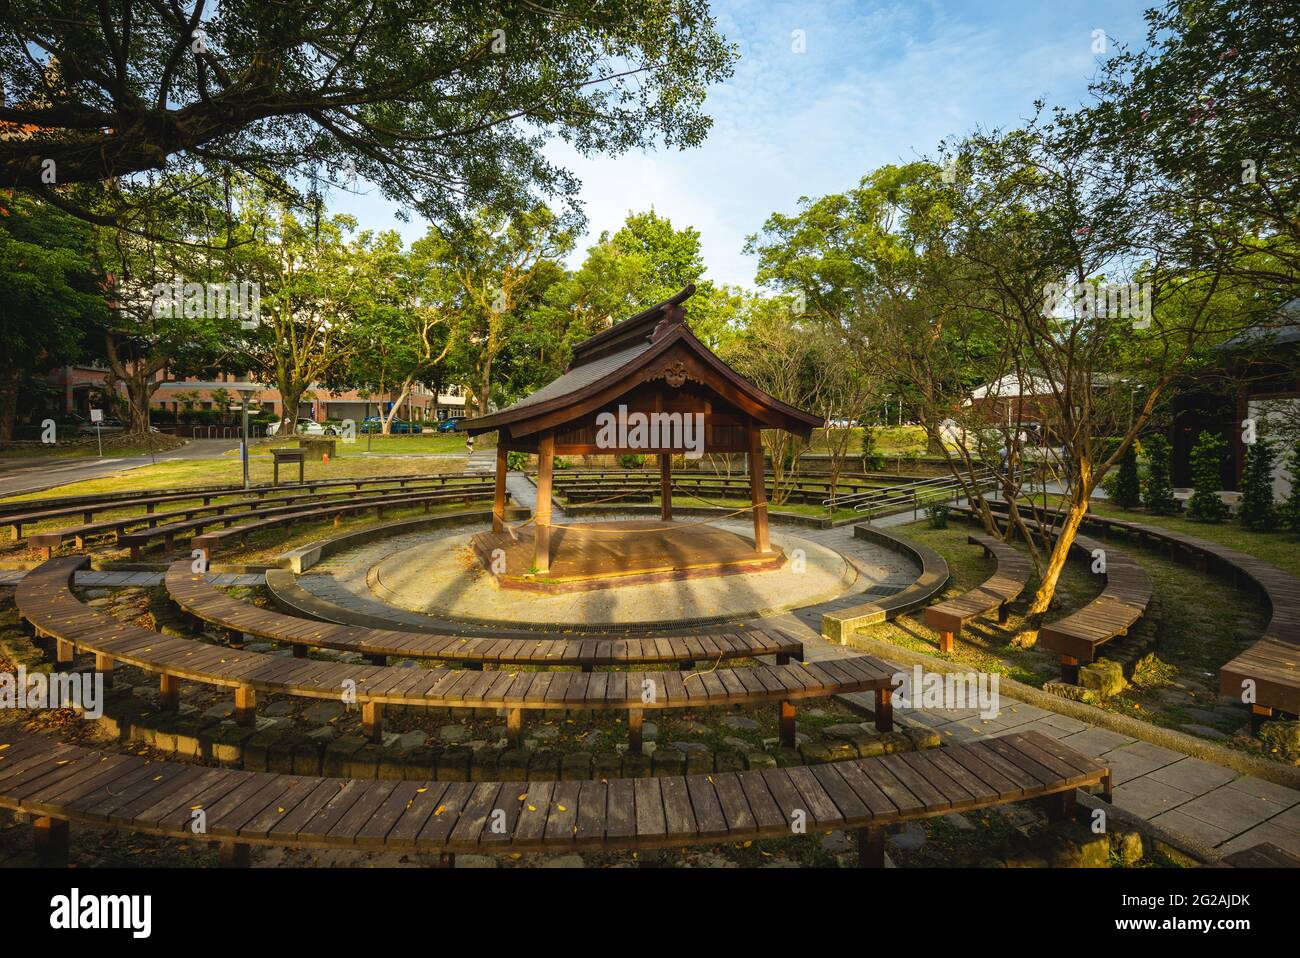 The sumo wrestling ring at Daxi Zhongzheng Park in Taoyuan, taiwan Stock Photo